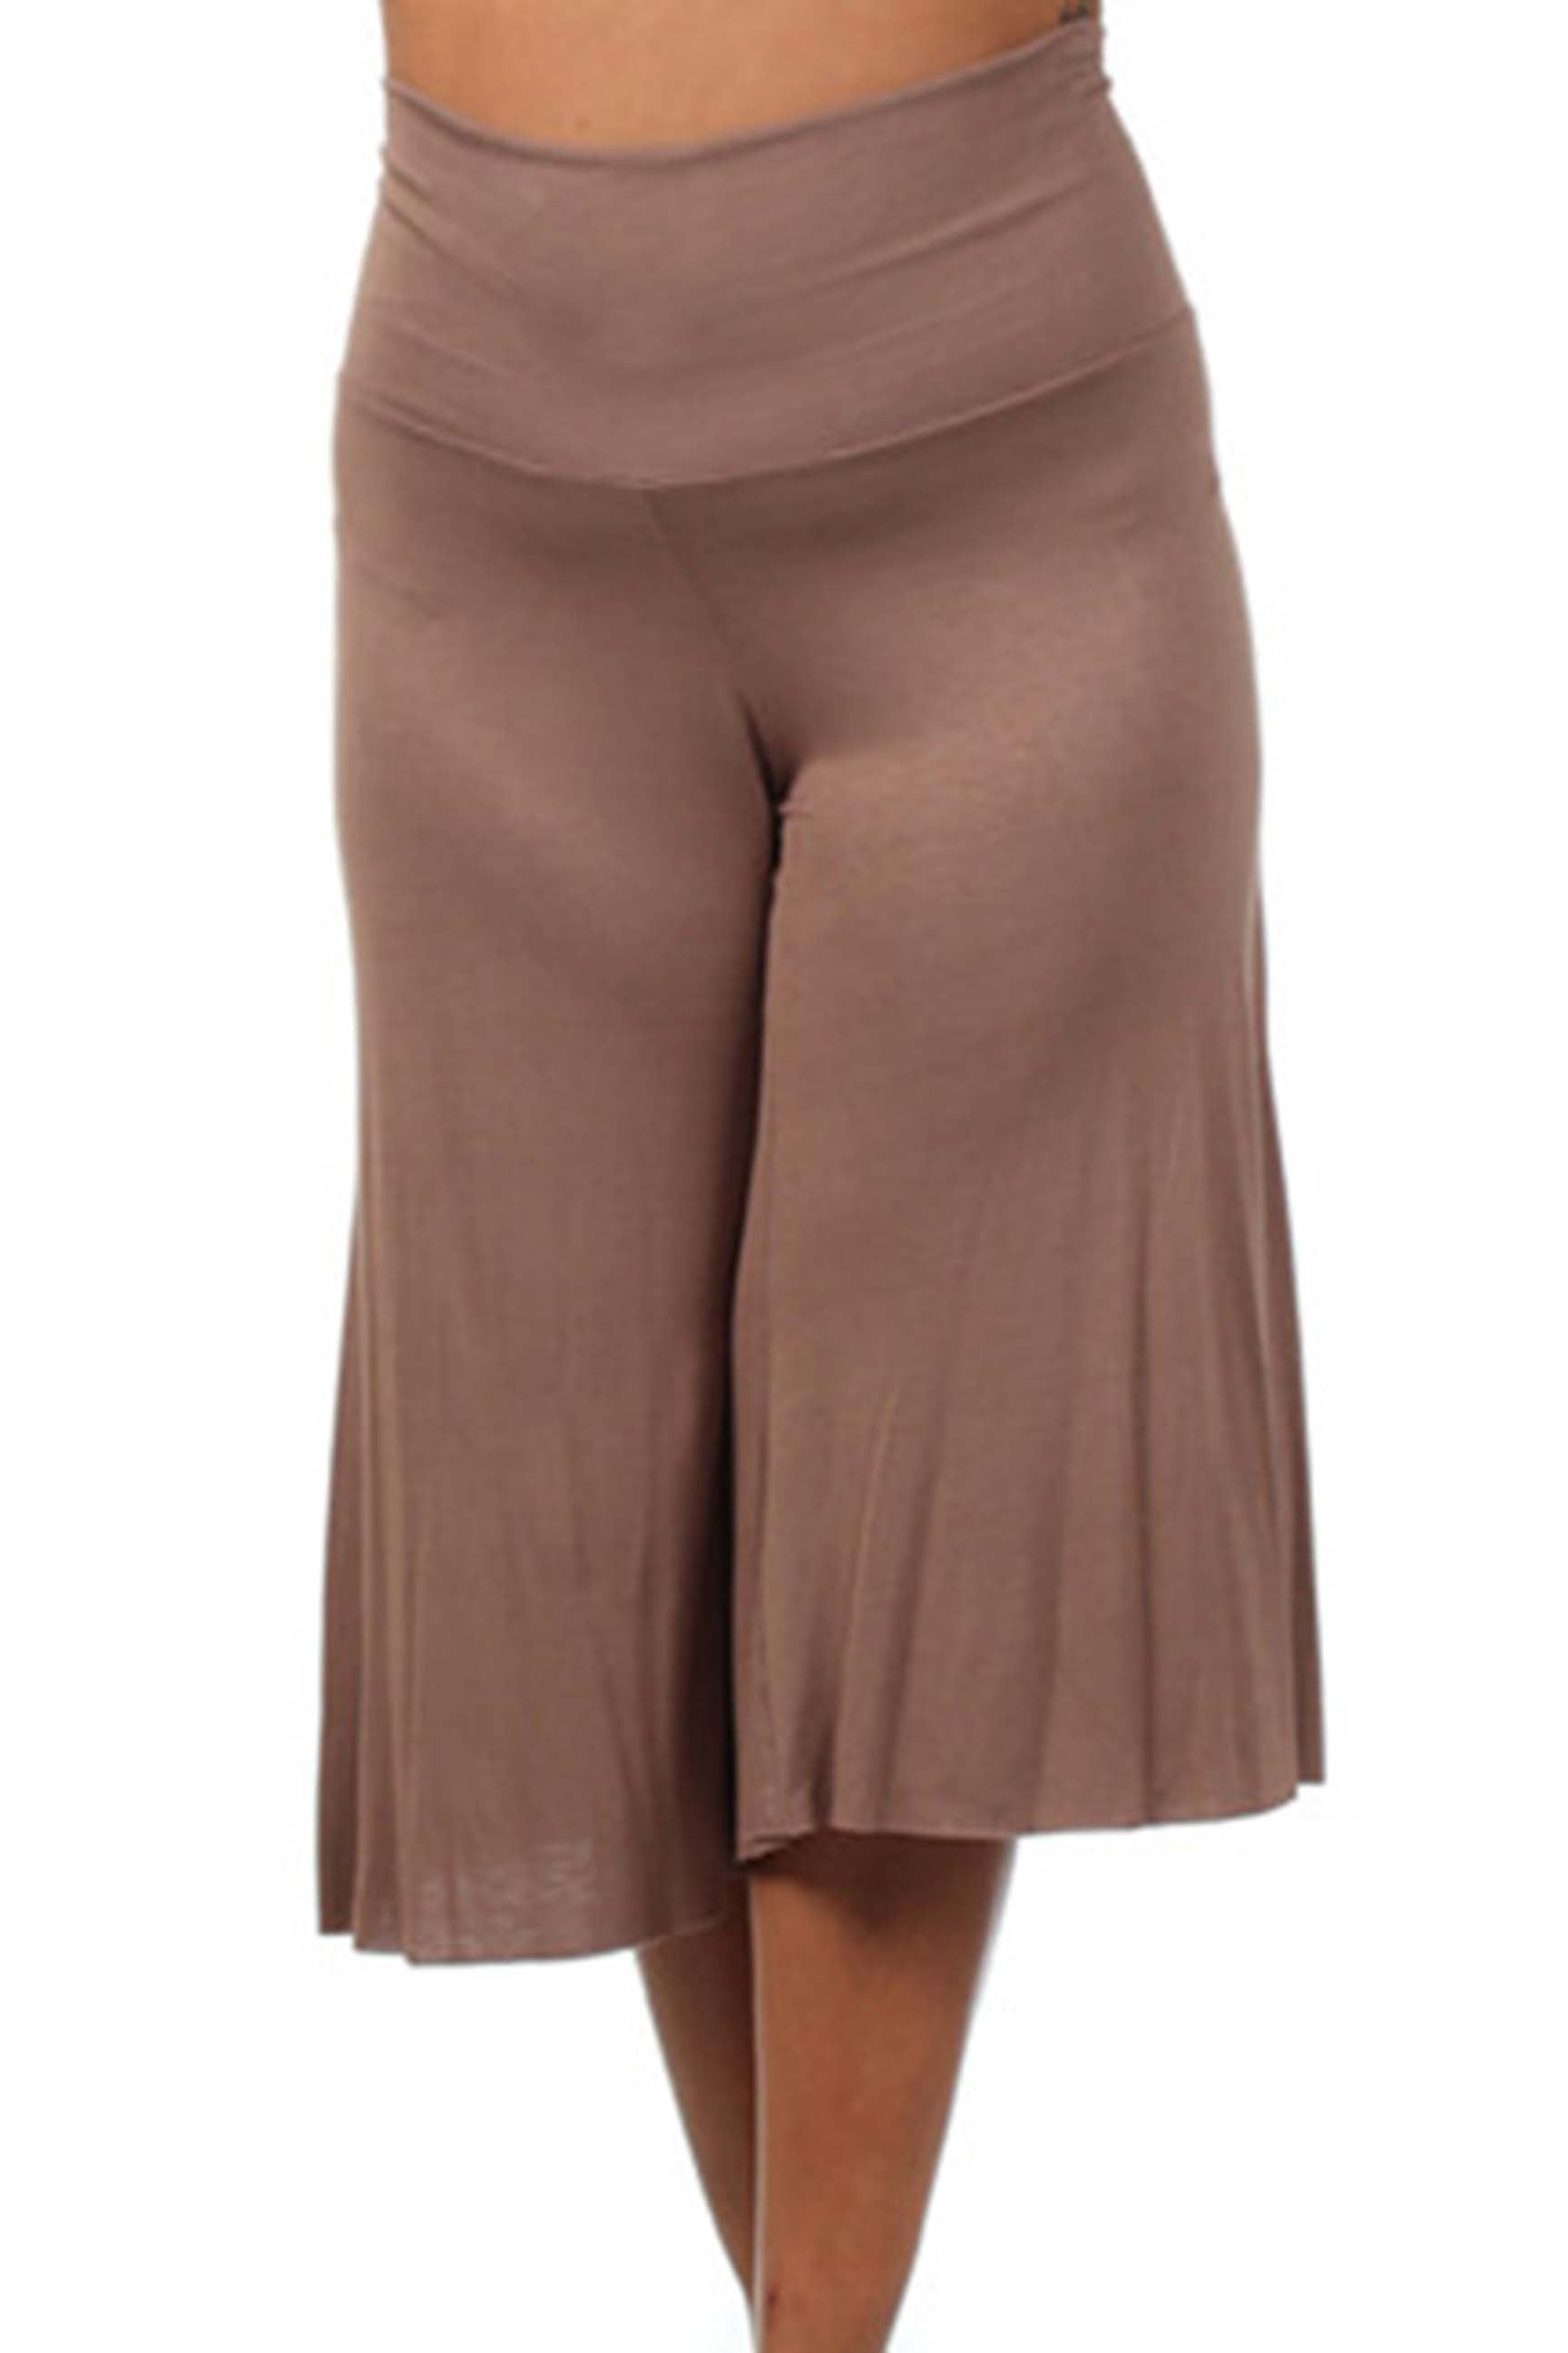 PB COUTURE Womens Plus Size Gaucho Maternity Capri Pants Culotte